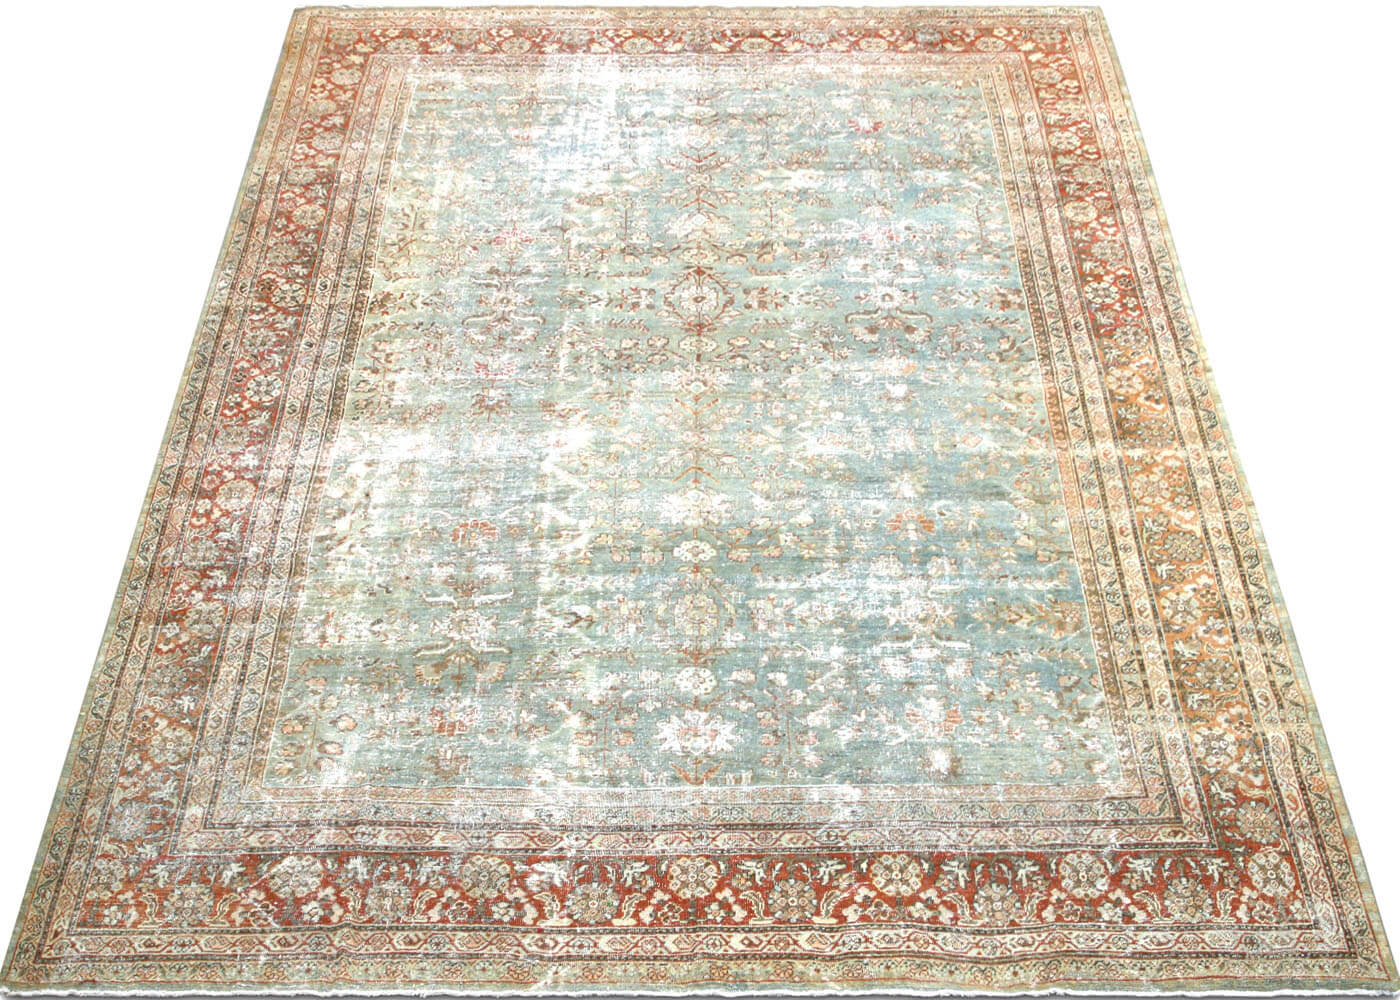 Semi Antique Persian Mahal Rug - 9'10" x 13'2"